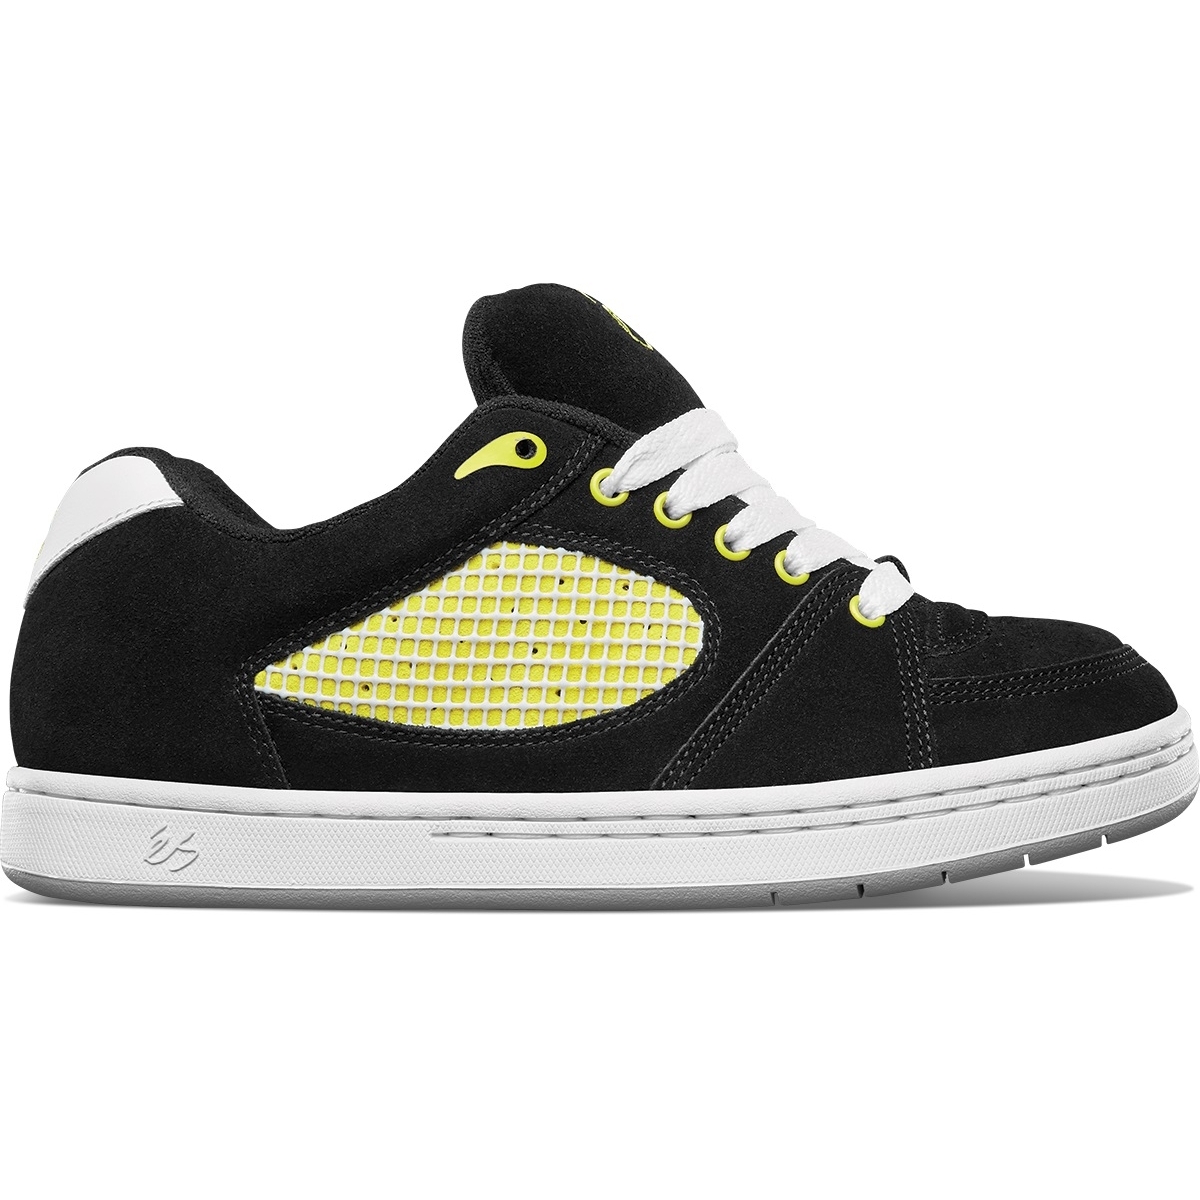 Accel OG x Chomp On Kicks (Black/White/Yellow)